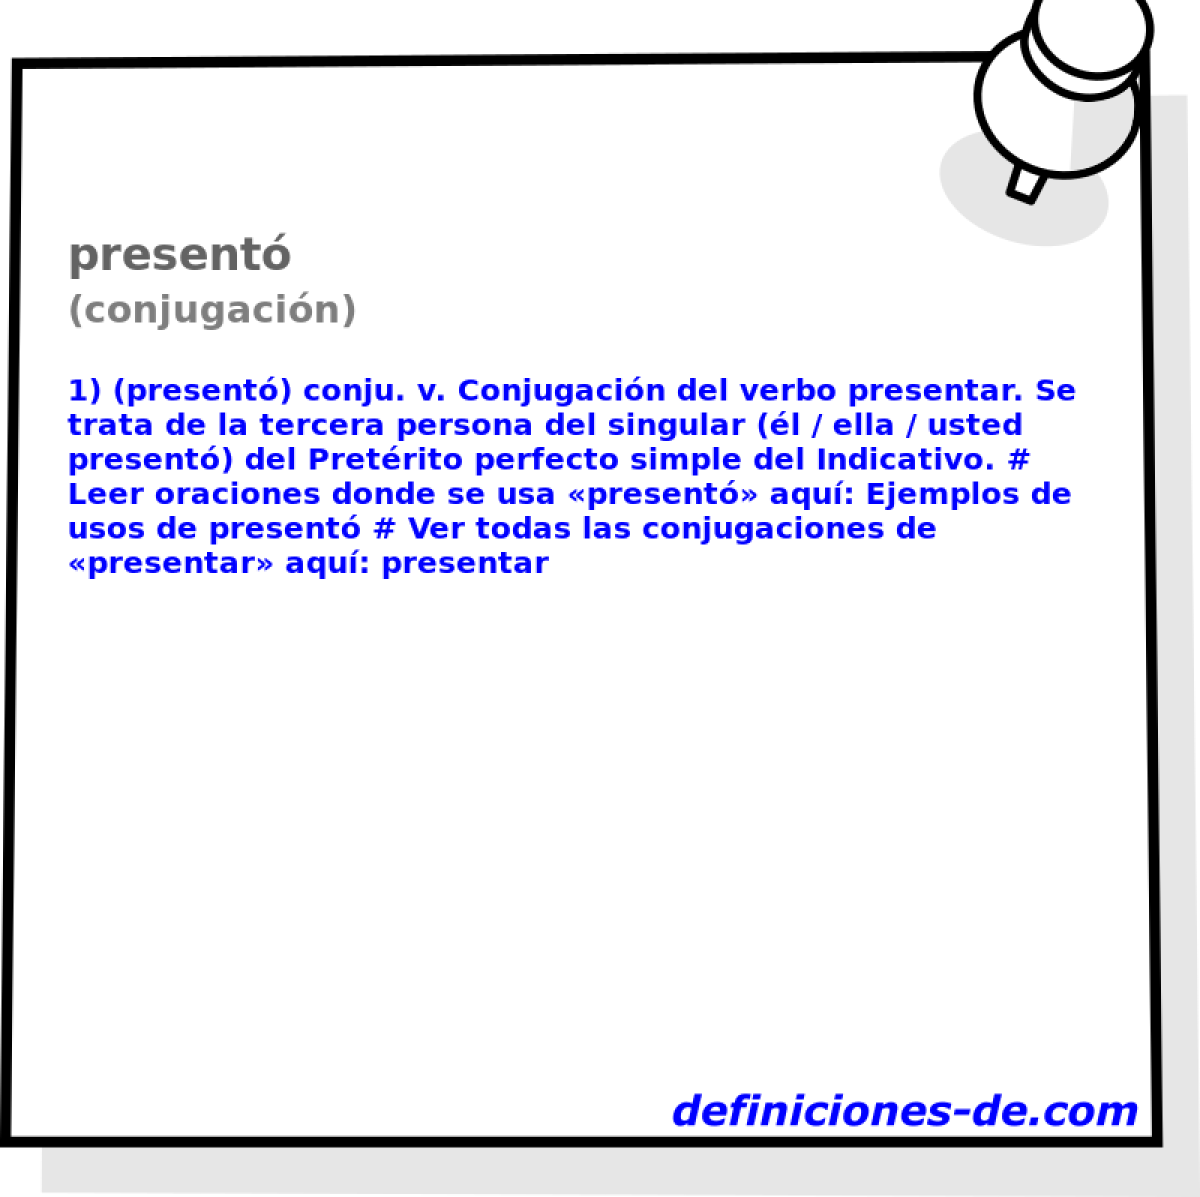 present (conjugacin)